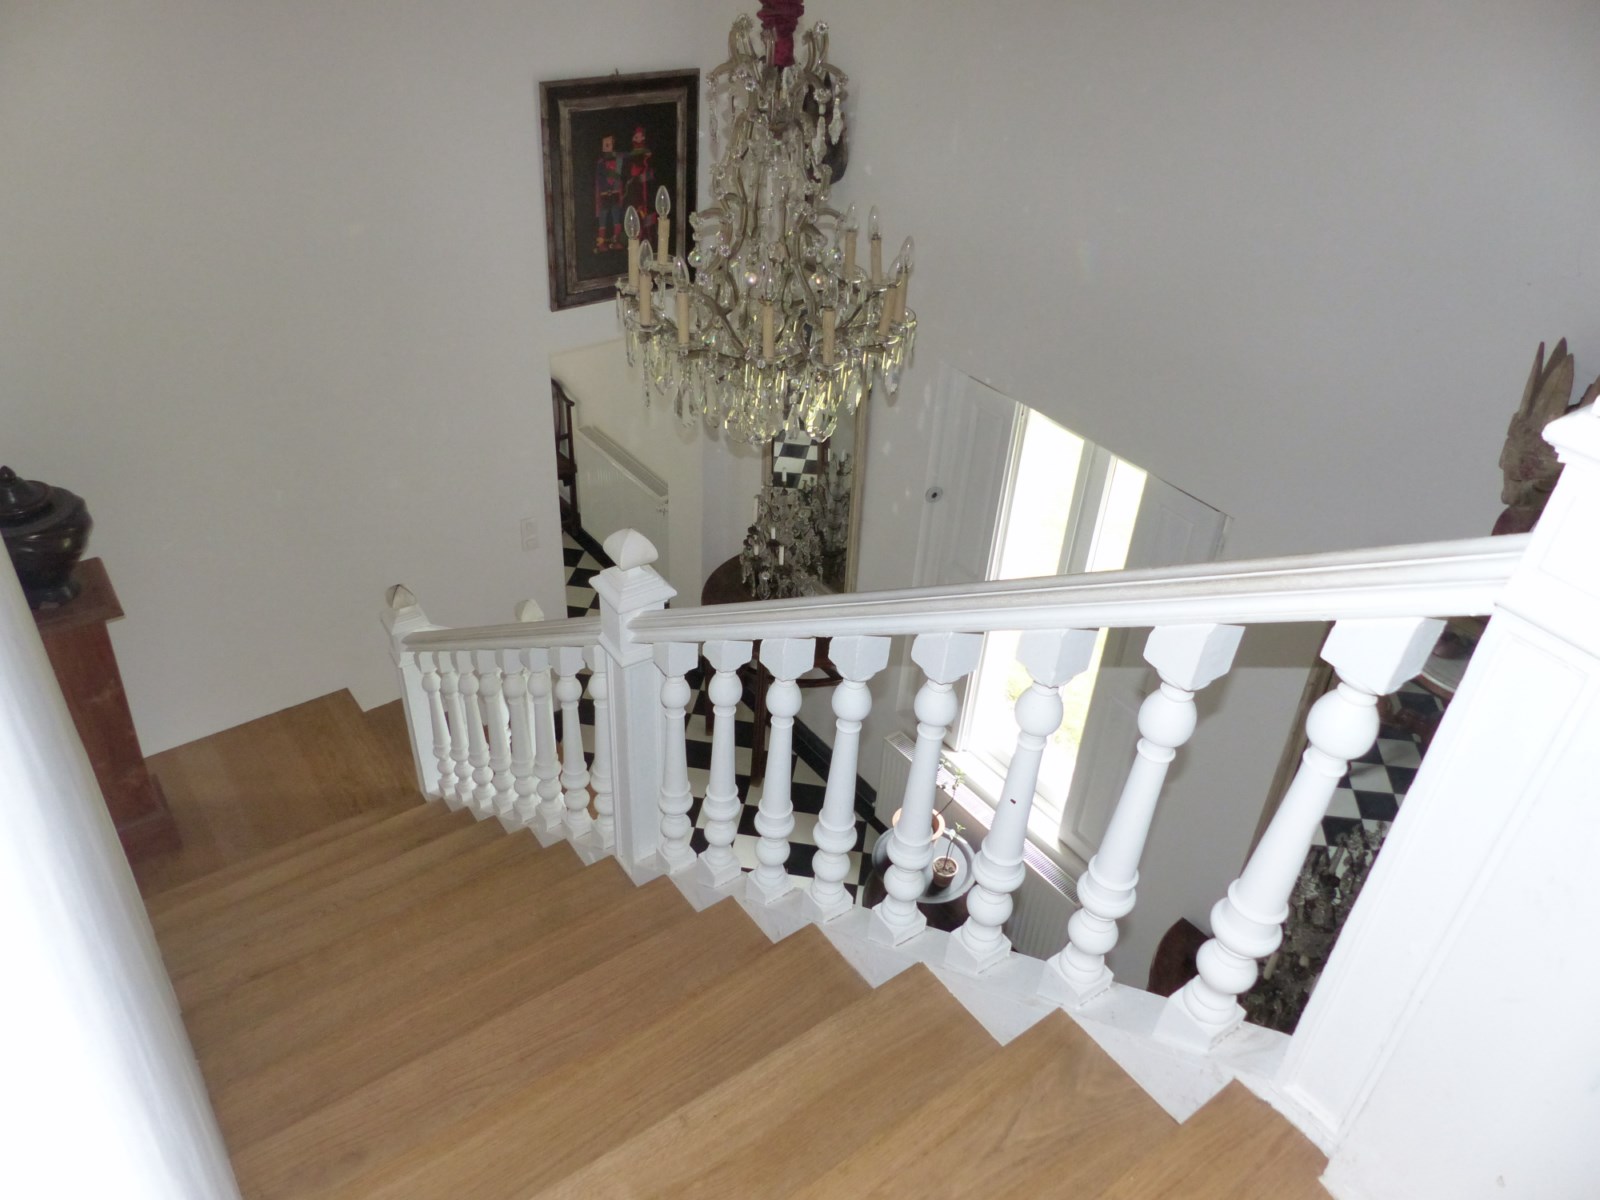 Escalier à balustres dans Maison champêtre a vendre dans environnement préservé 76 normandie